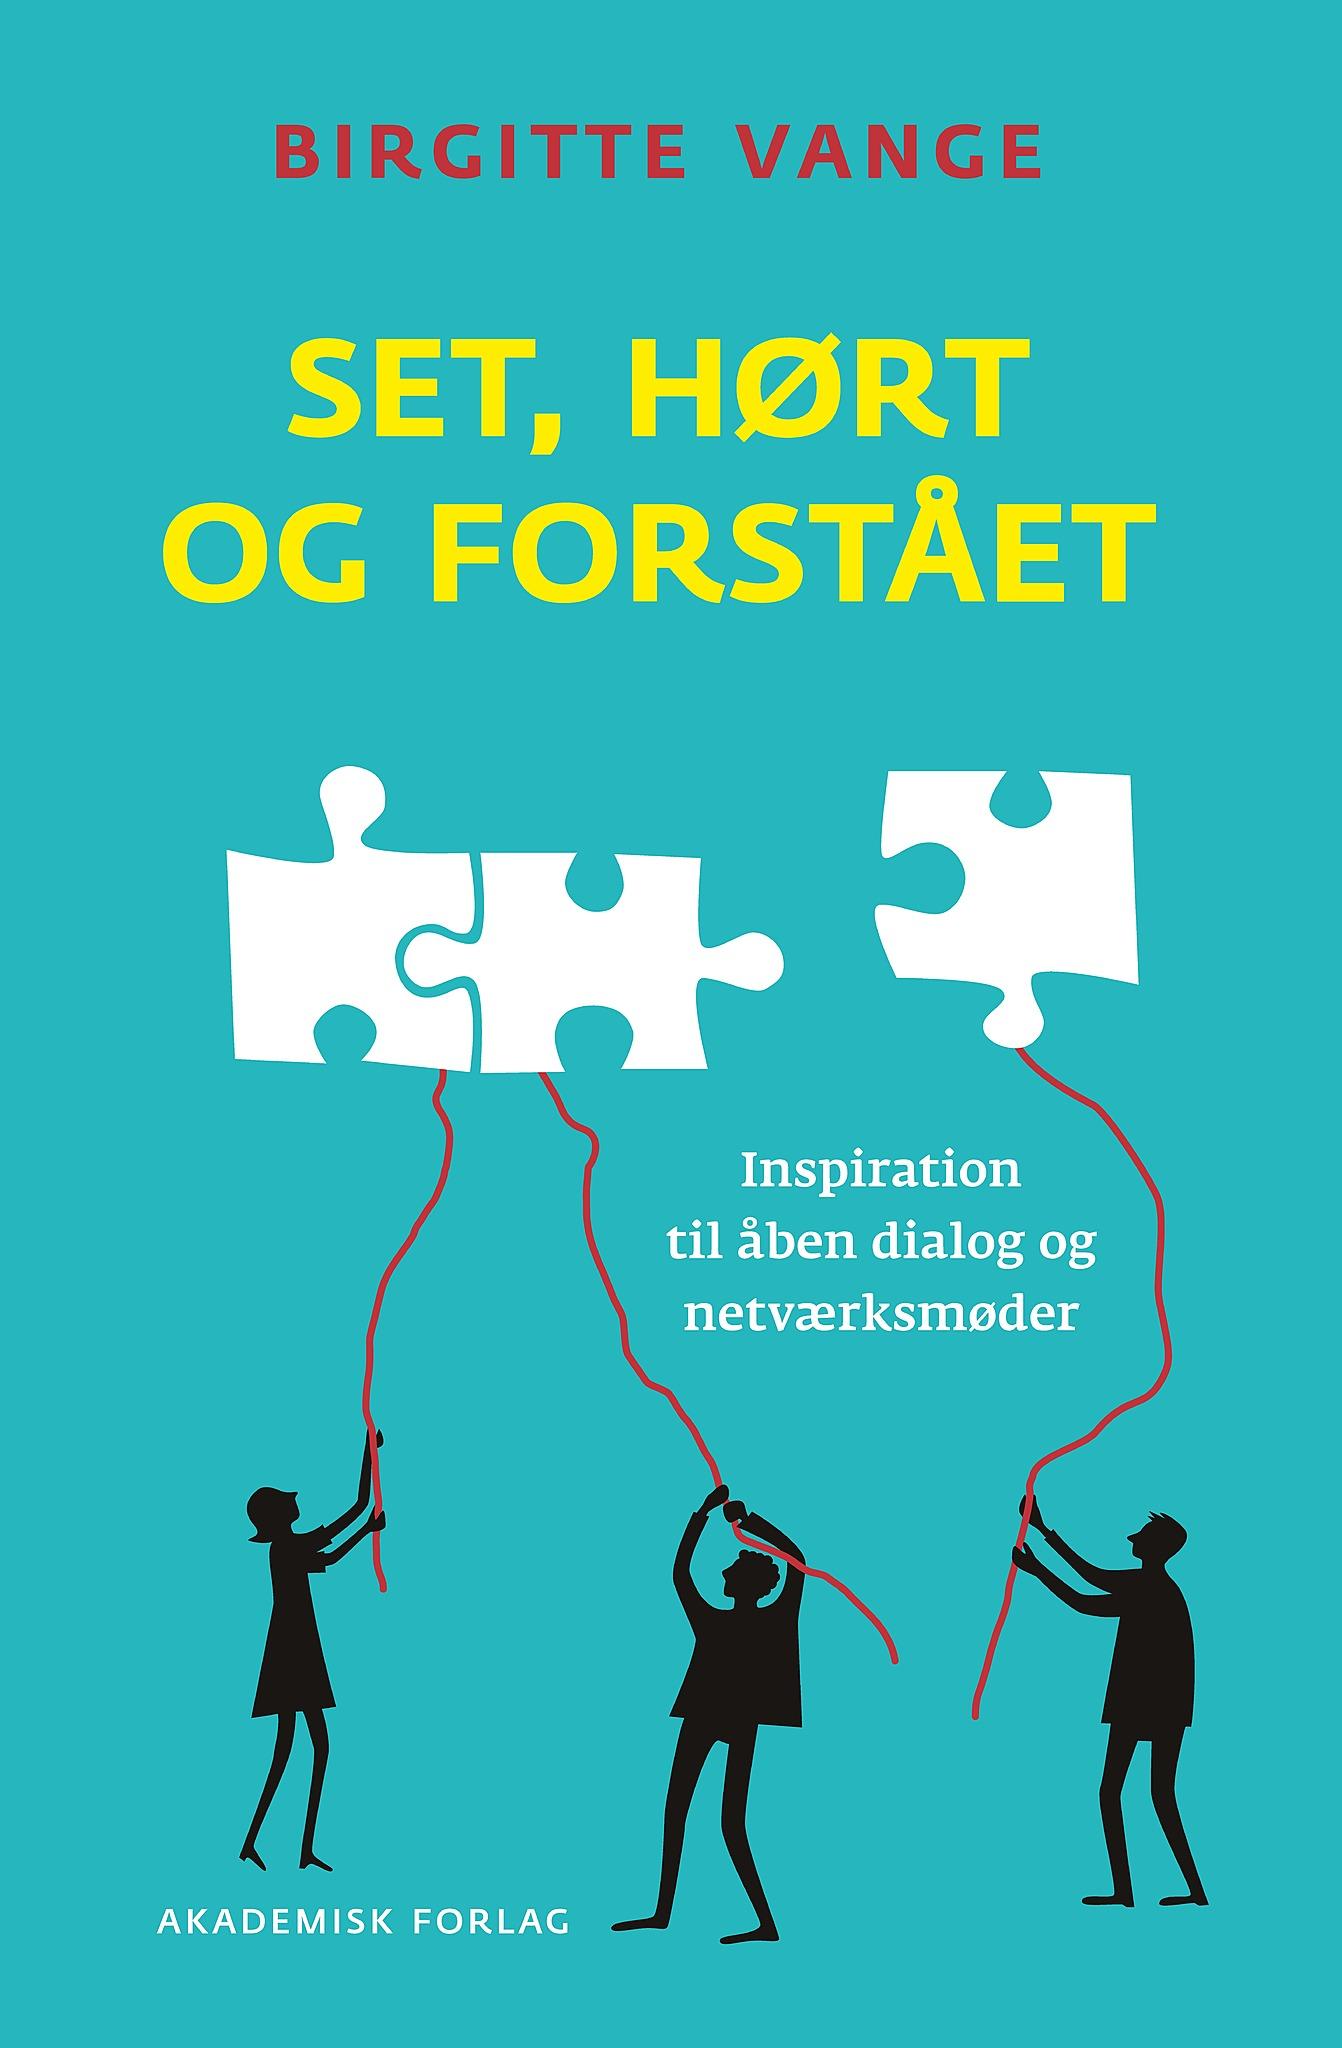 Forfatter: Birgitte Vange Akademisk Forlag, 2015. Sider: 284. Pris: 299 kr.